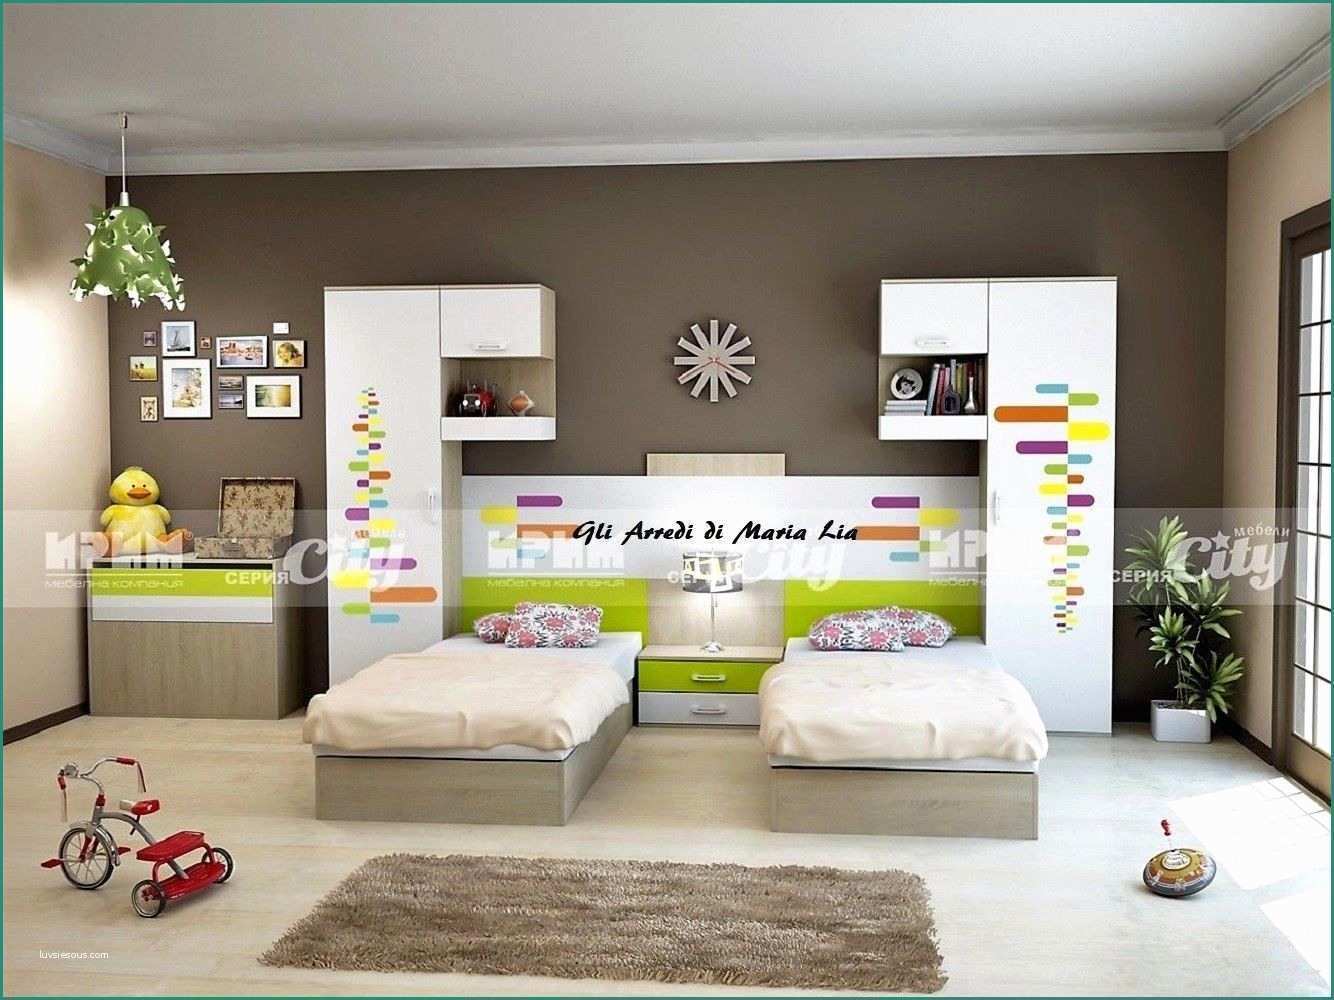 Camere A Tema torino E Camere Per Bambini Usate Design Casa Creativa E Mobili